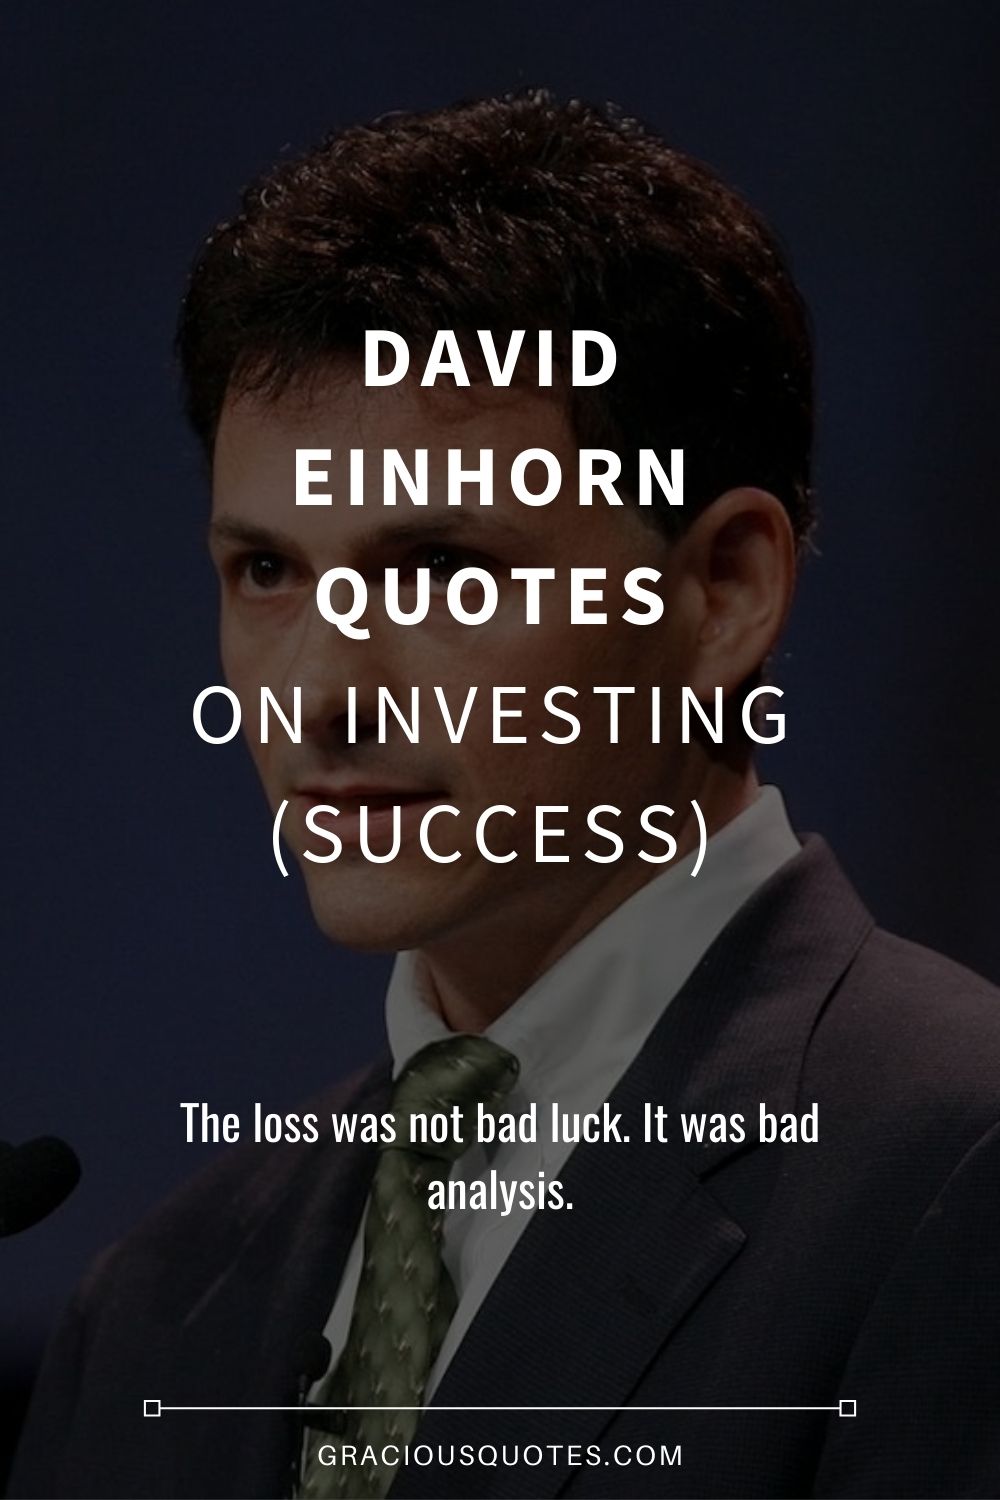 David Einhorn Quotes on Investing (SUCCESS) - Gracious Quotes